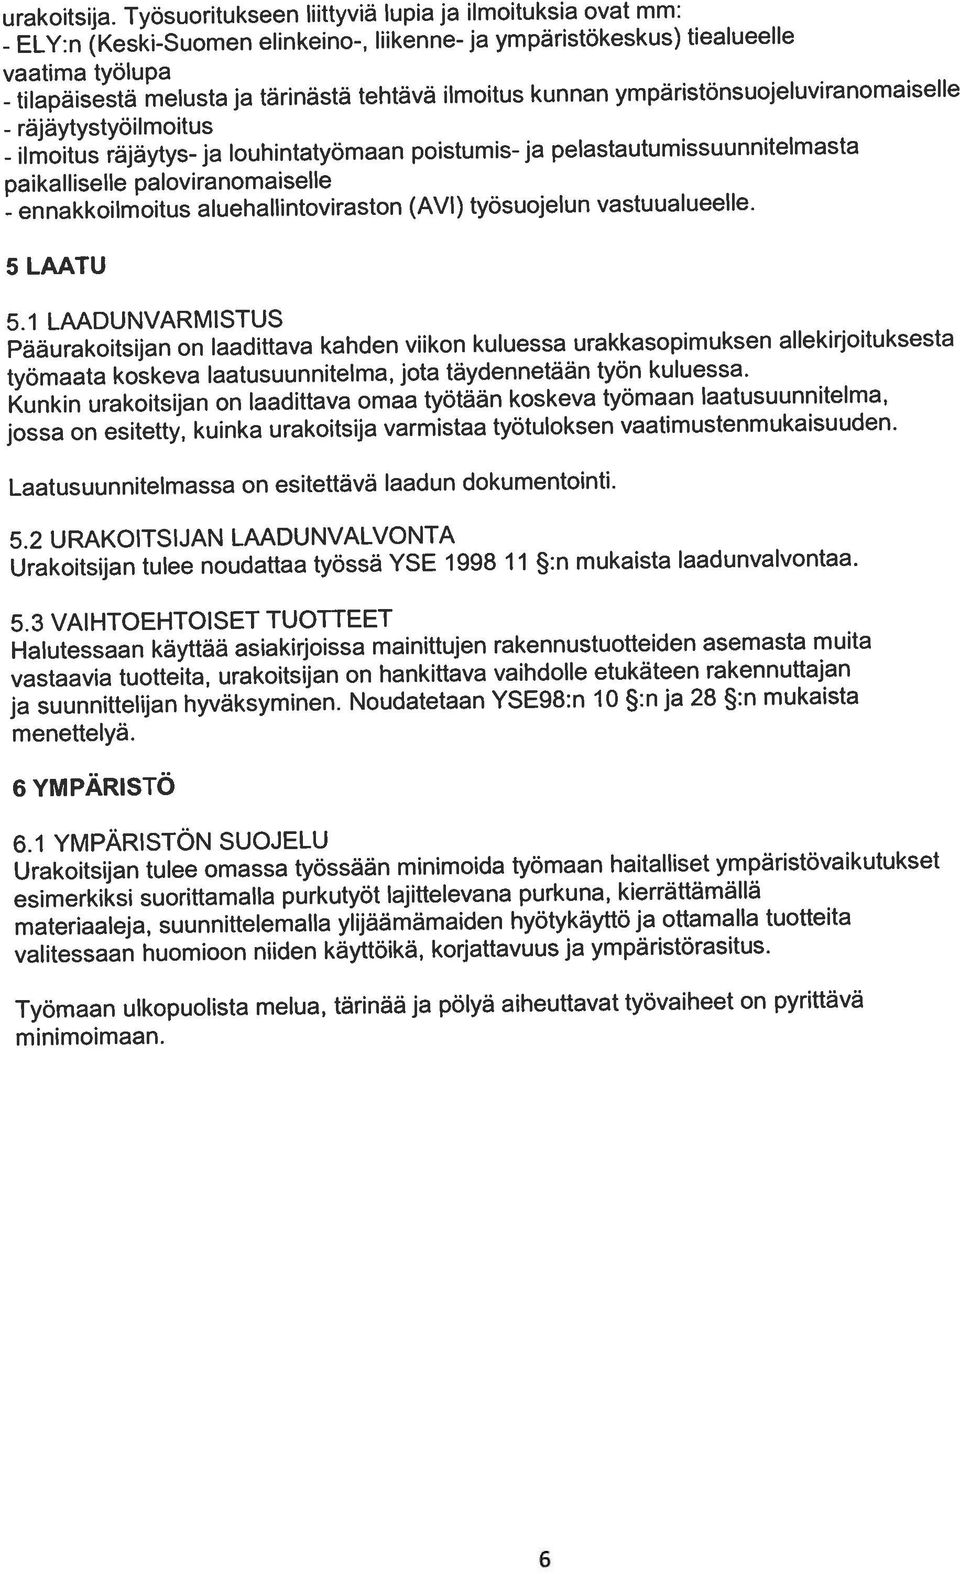 ympäristönsuojeluviranornaiselle (Keski-Suomen elinkeino-, liikenne- ja ympäristökeskus) tiealueelle urakoitsija.